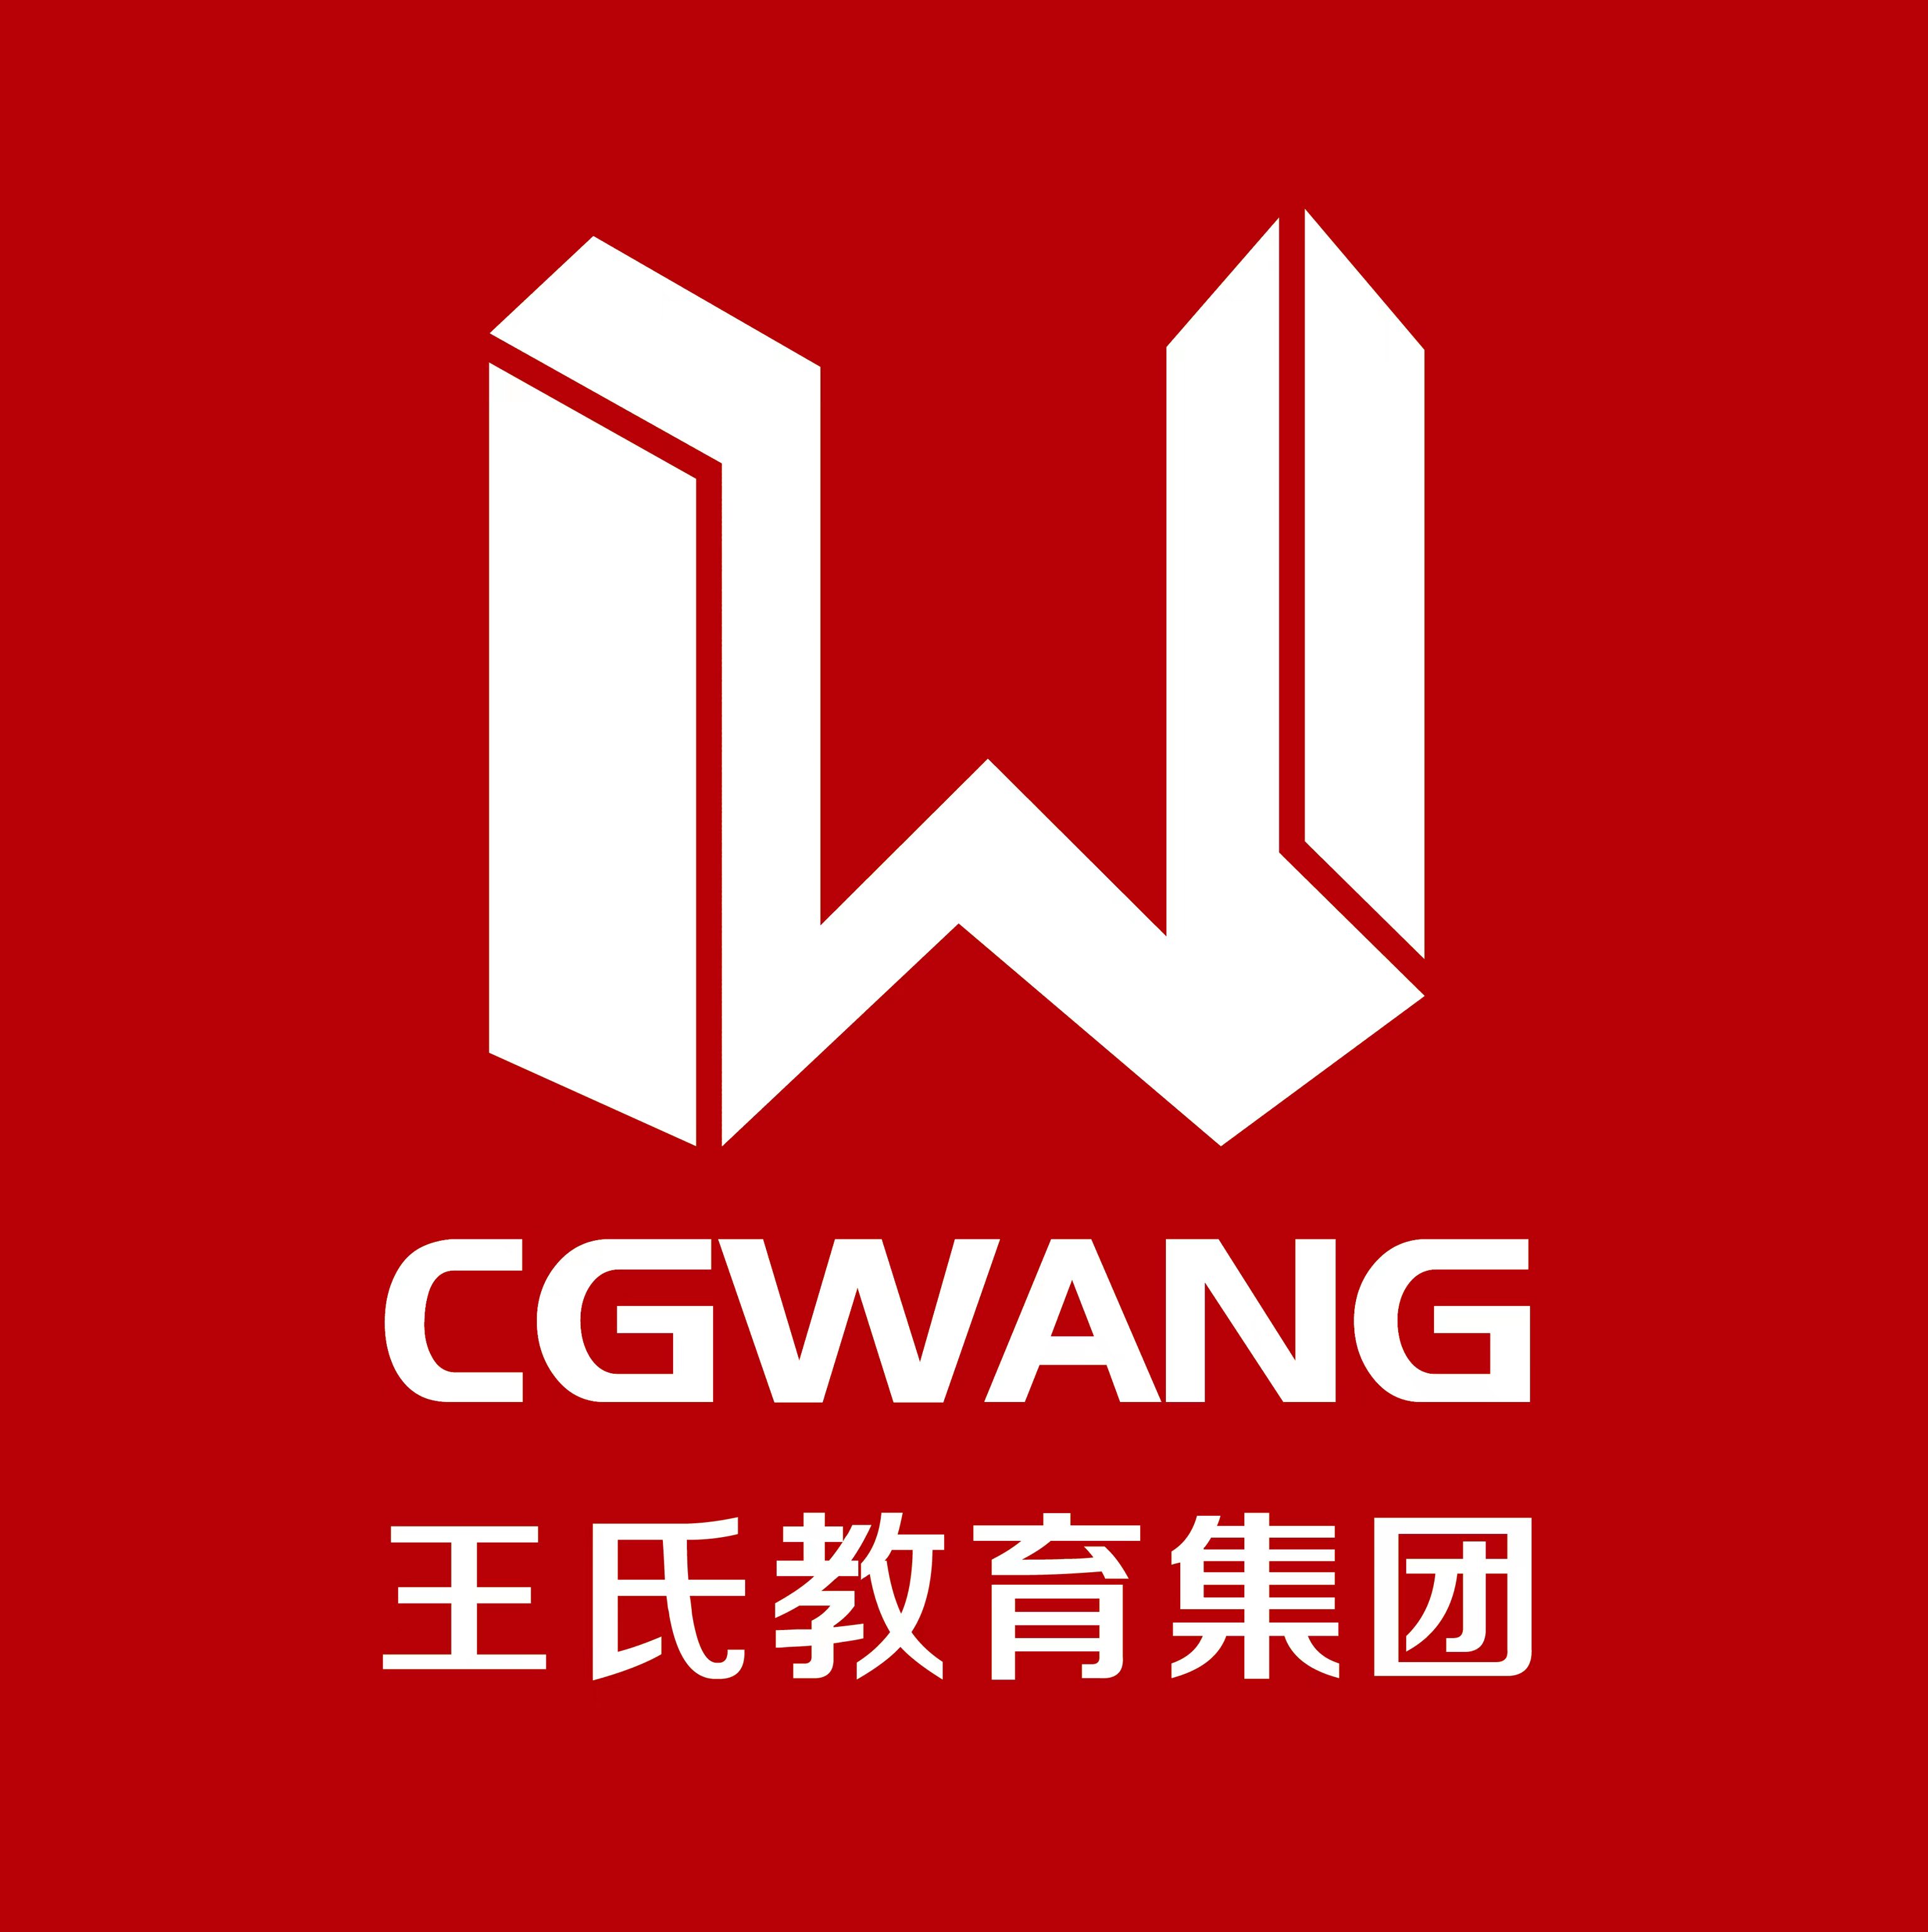 CGwang王氏教育培训机构